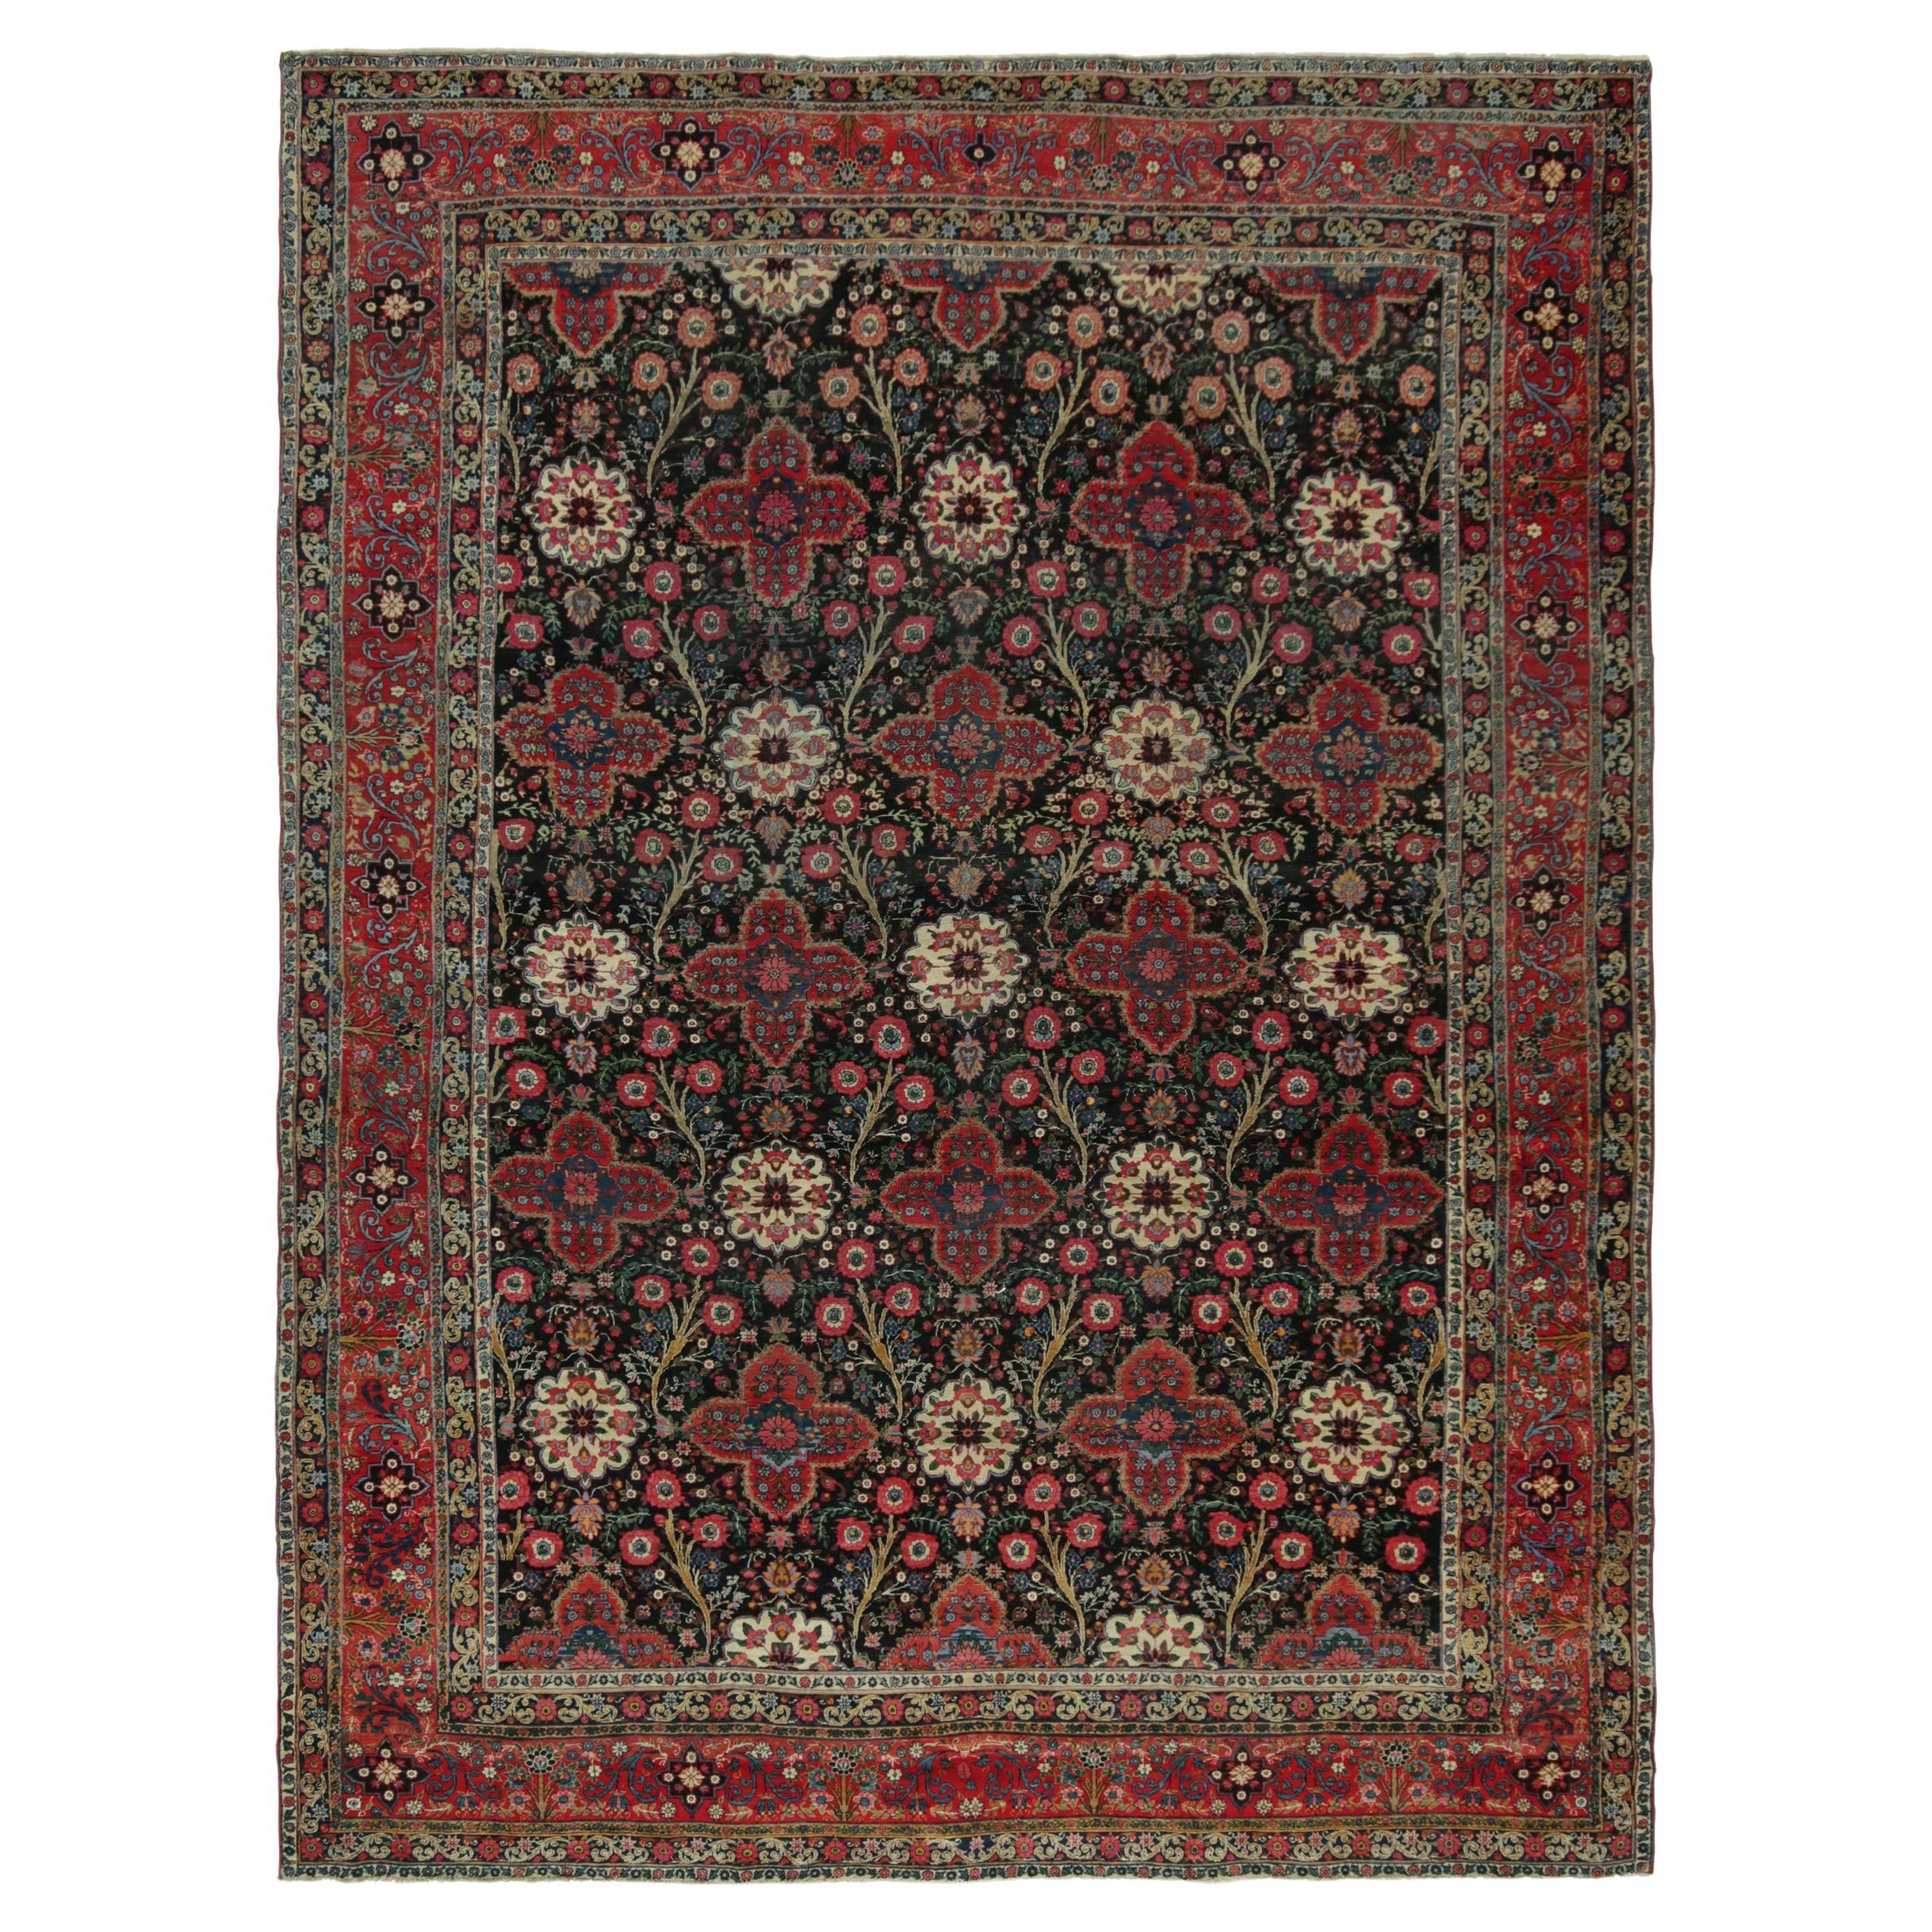 Antiker persischer Teppich in Schwarz mit roten Blumenmuster von Teppich & Kilim